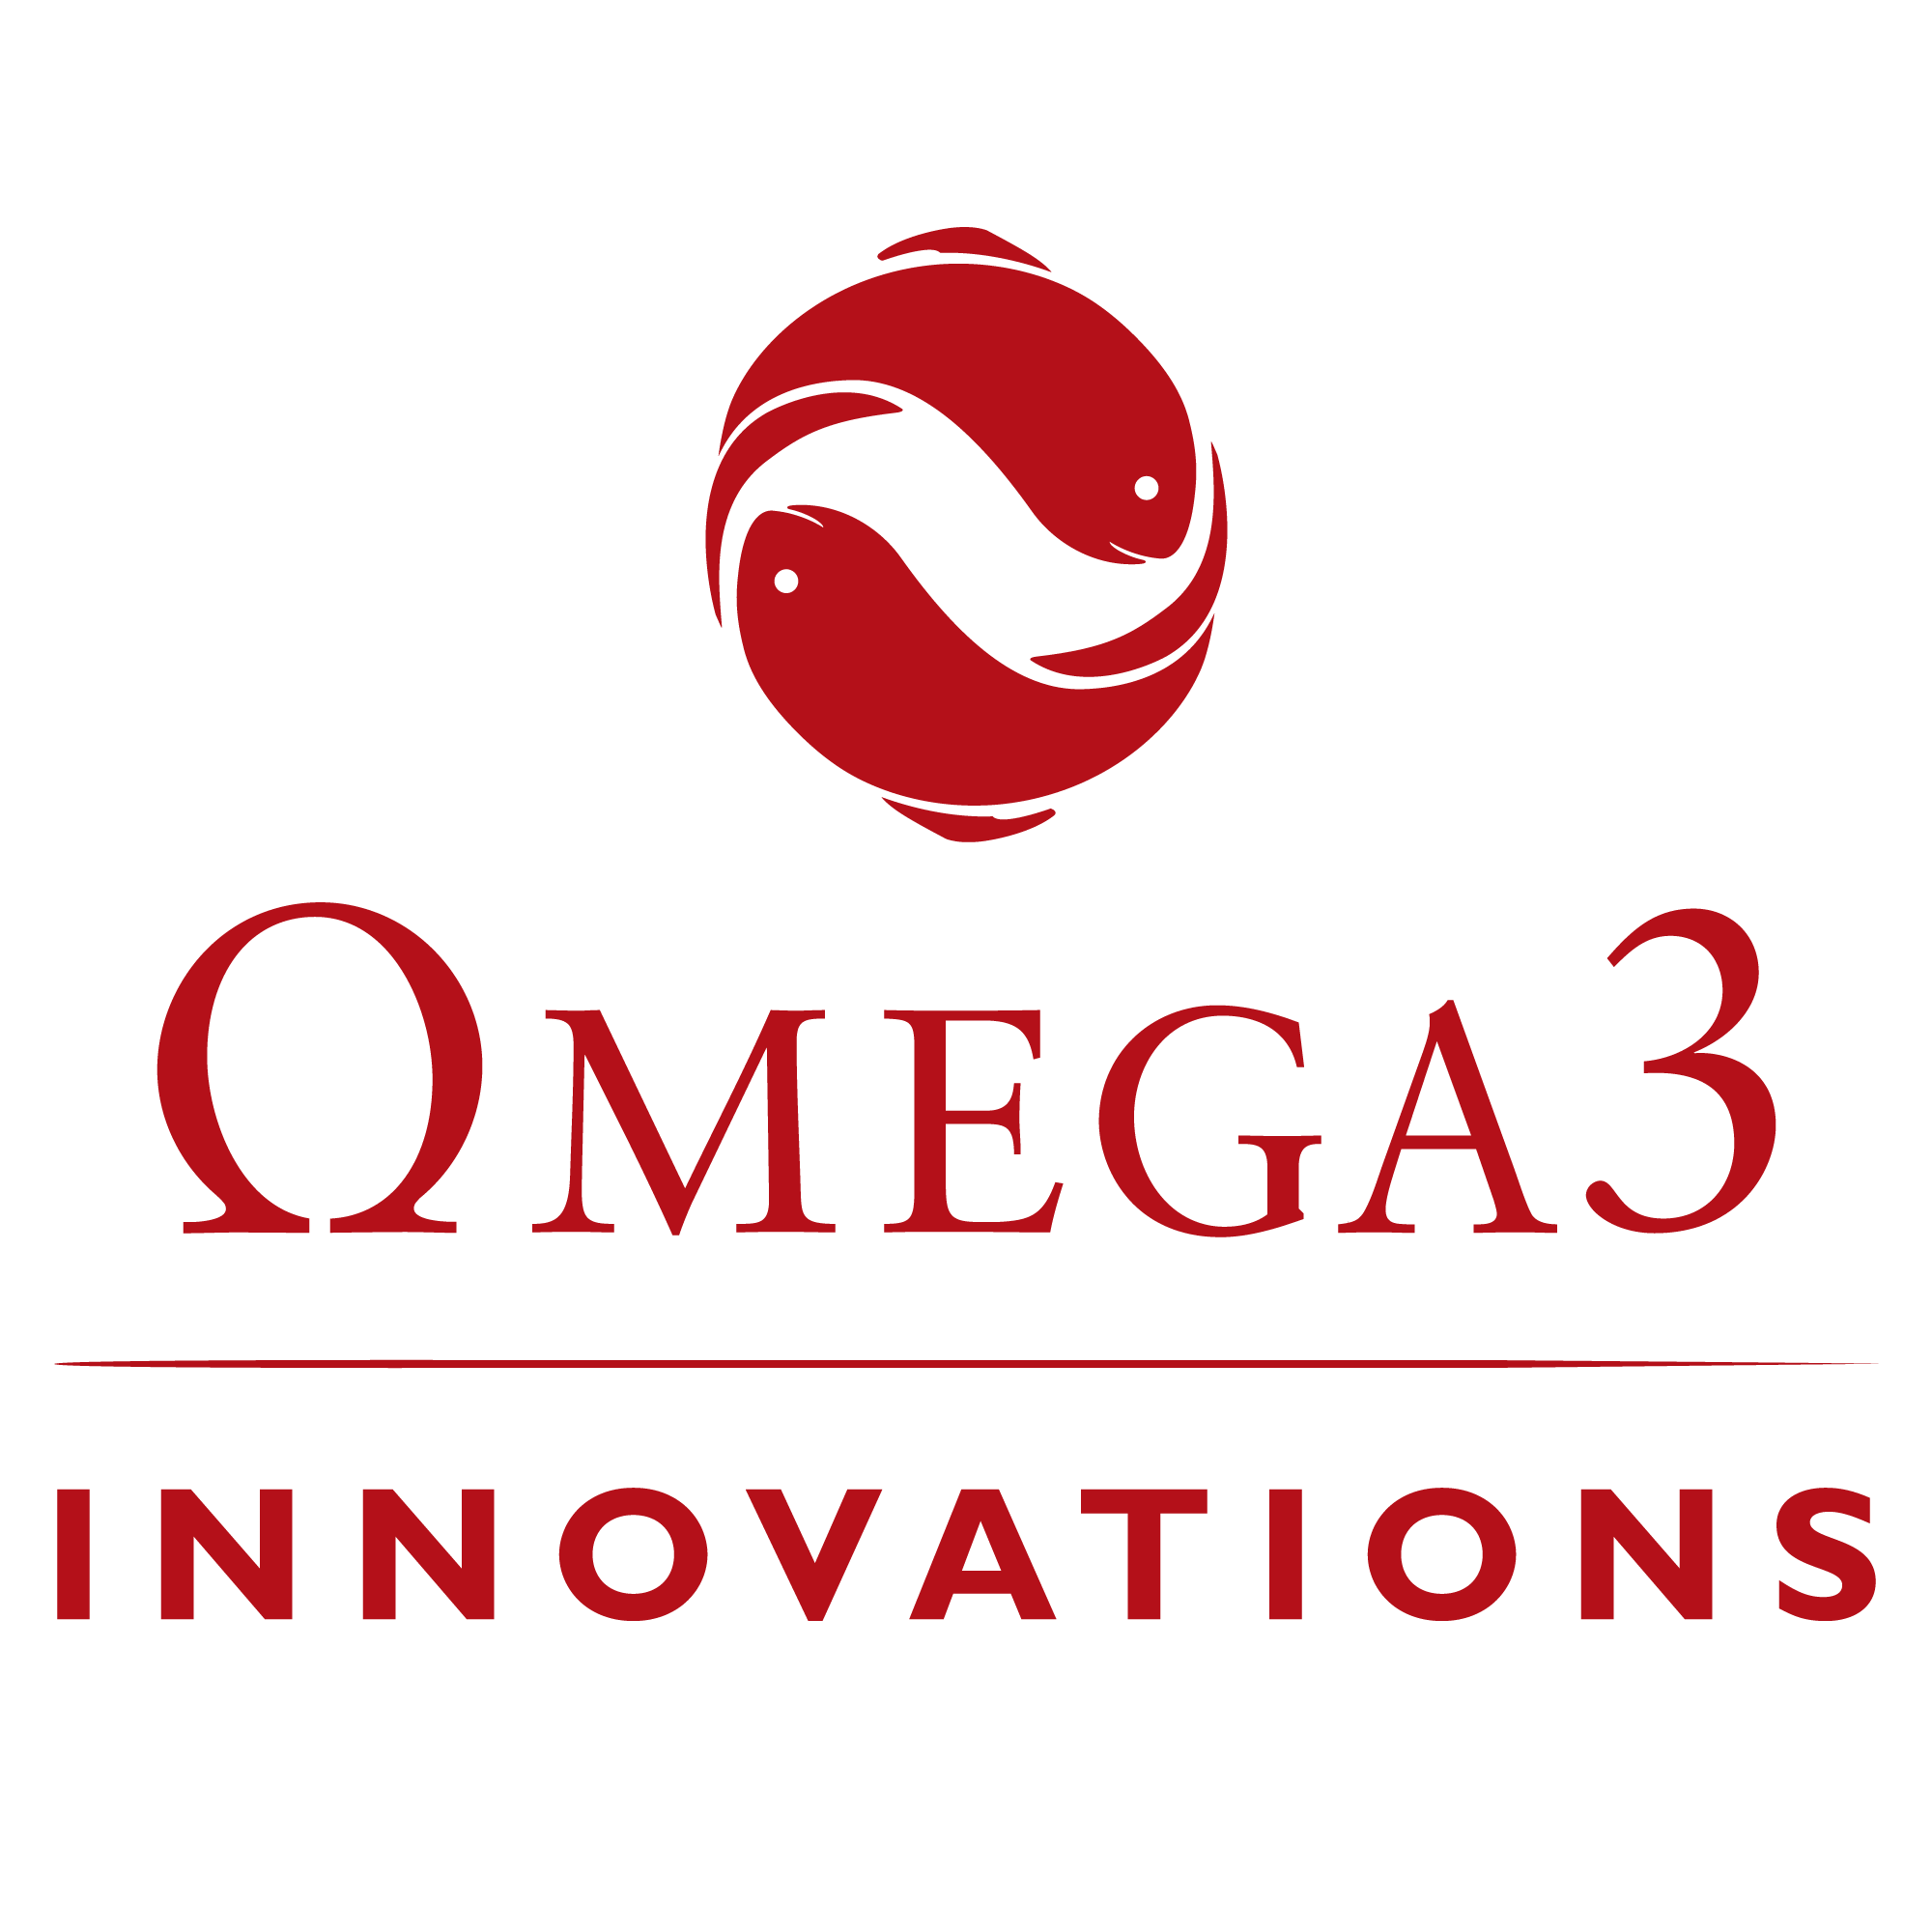 Omega3 Innovations Logo